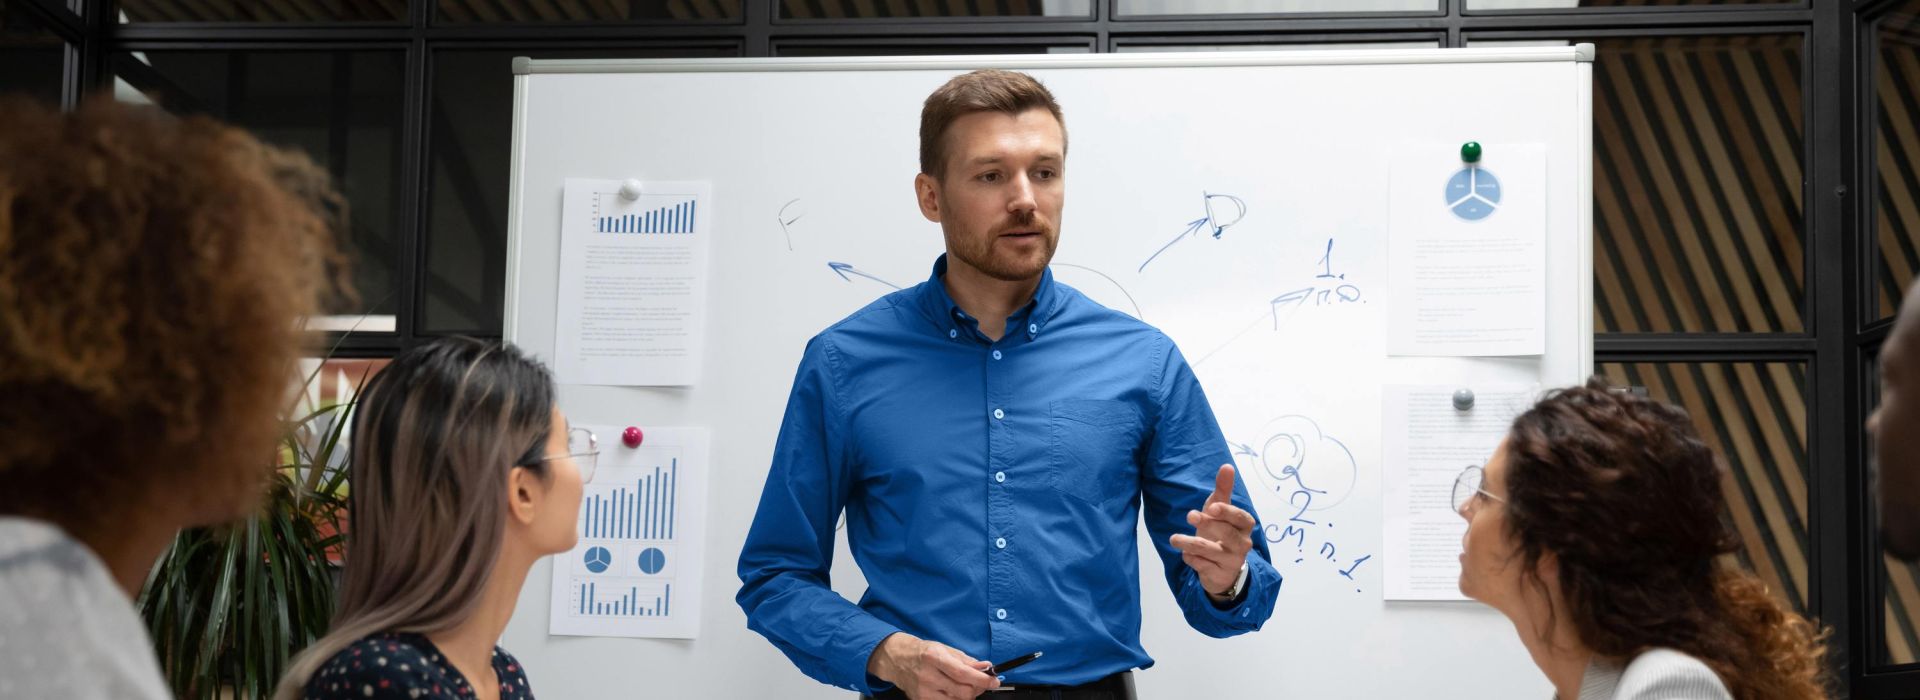 Ein Mann hält an einem Whiteboard eine Präsentation vor einem Team an Kolleg*innen.